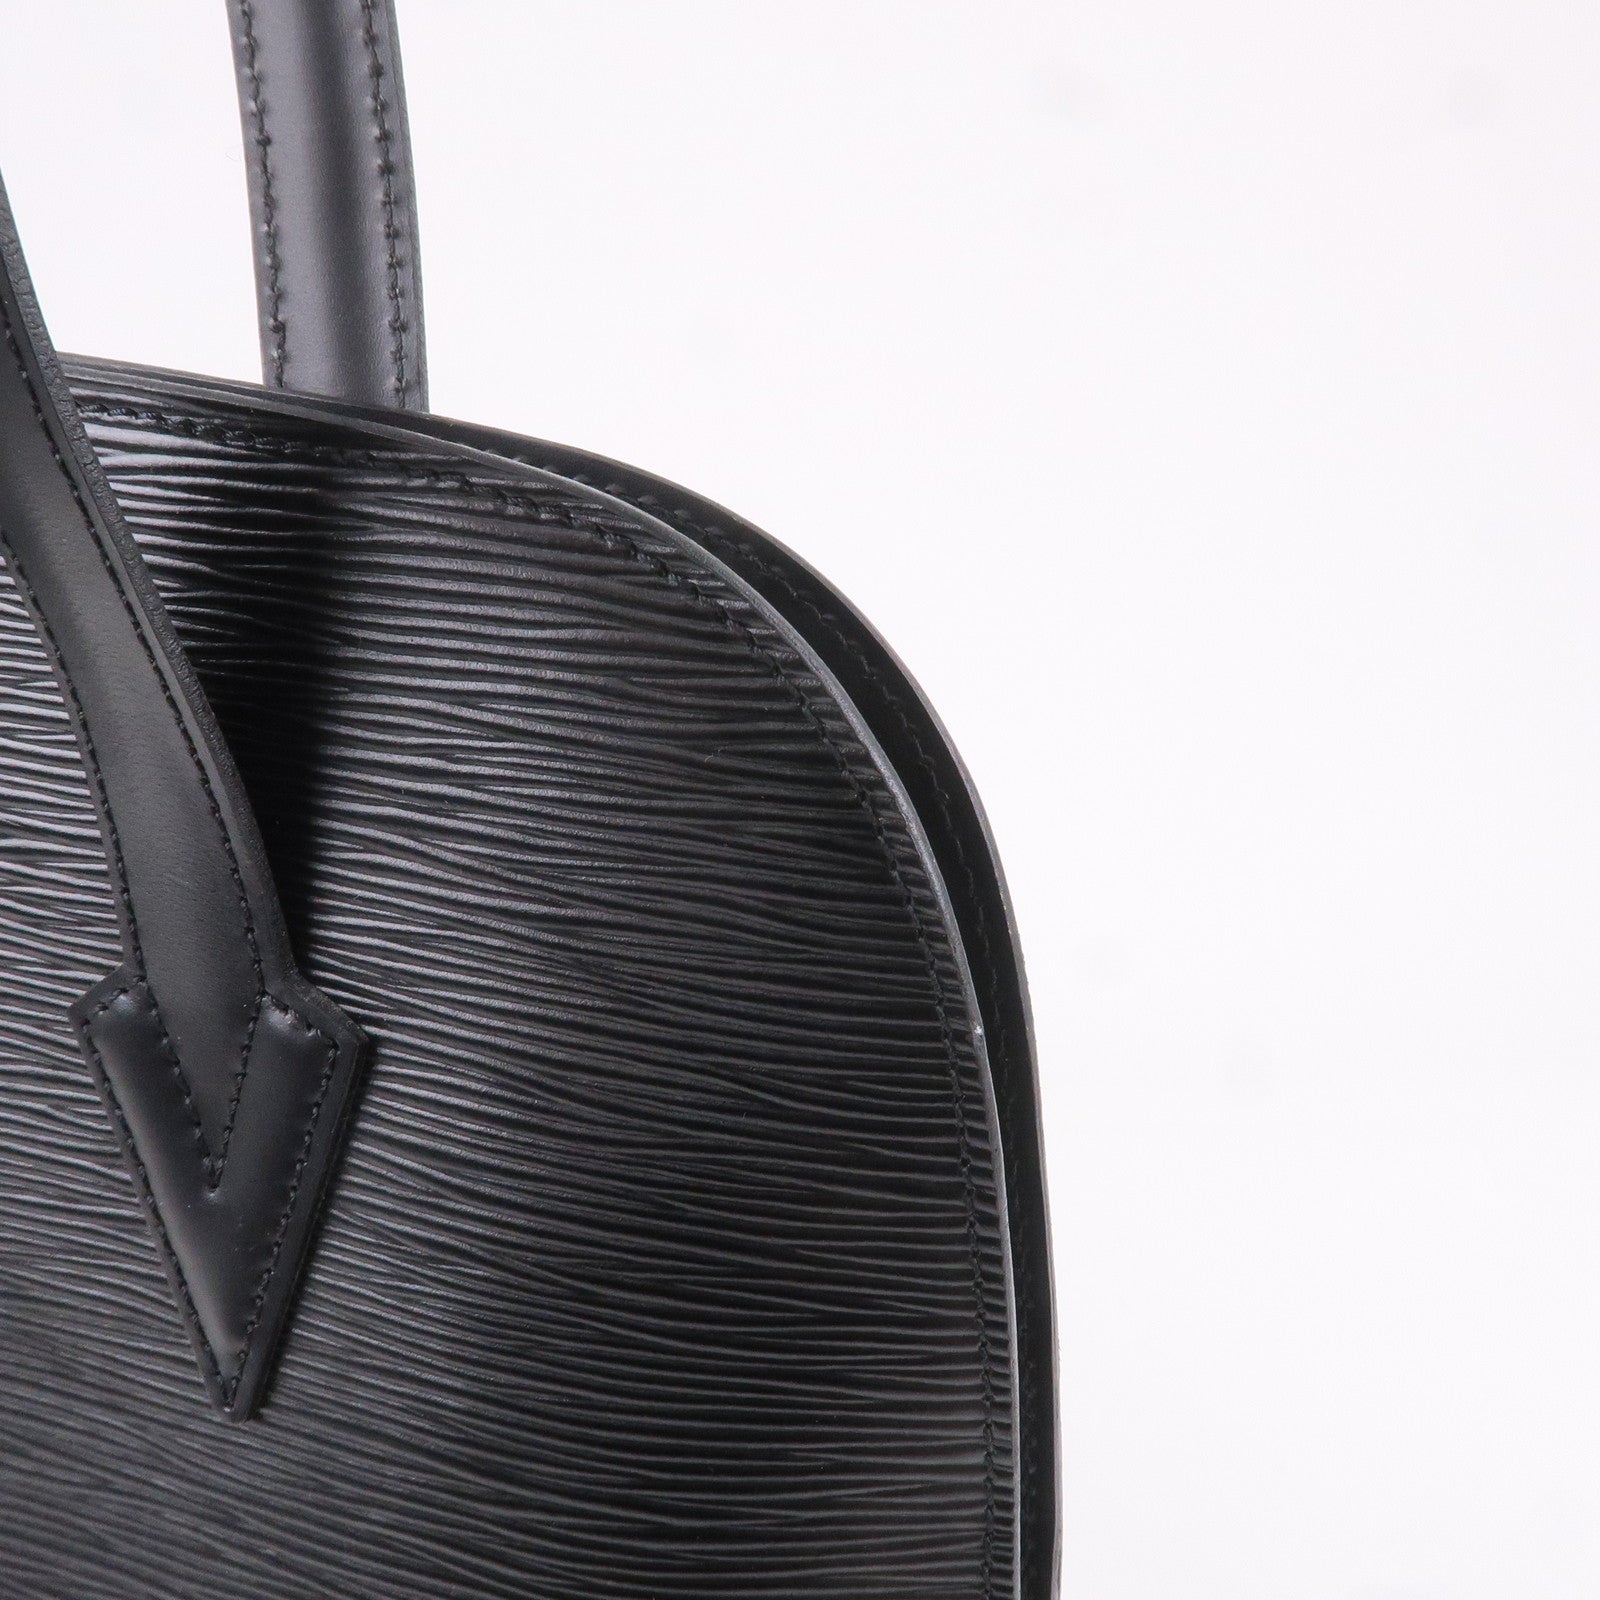 Louis Vuitton Vintage Epi Lussac - Black Shoulder Bags, Handbags